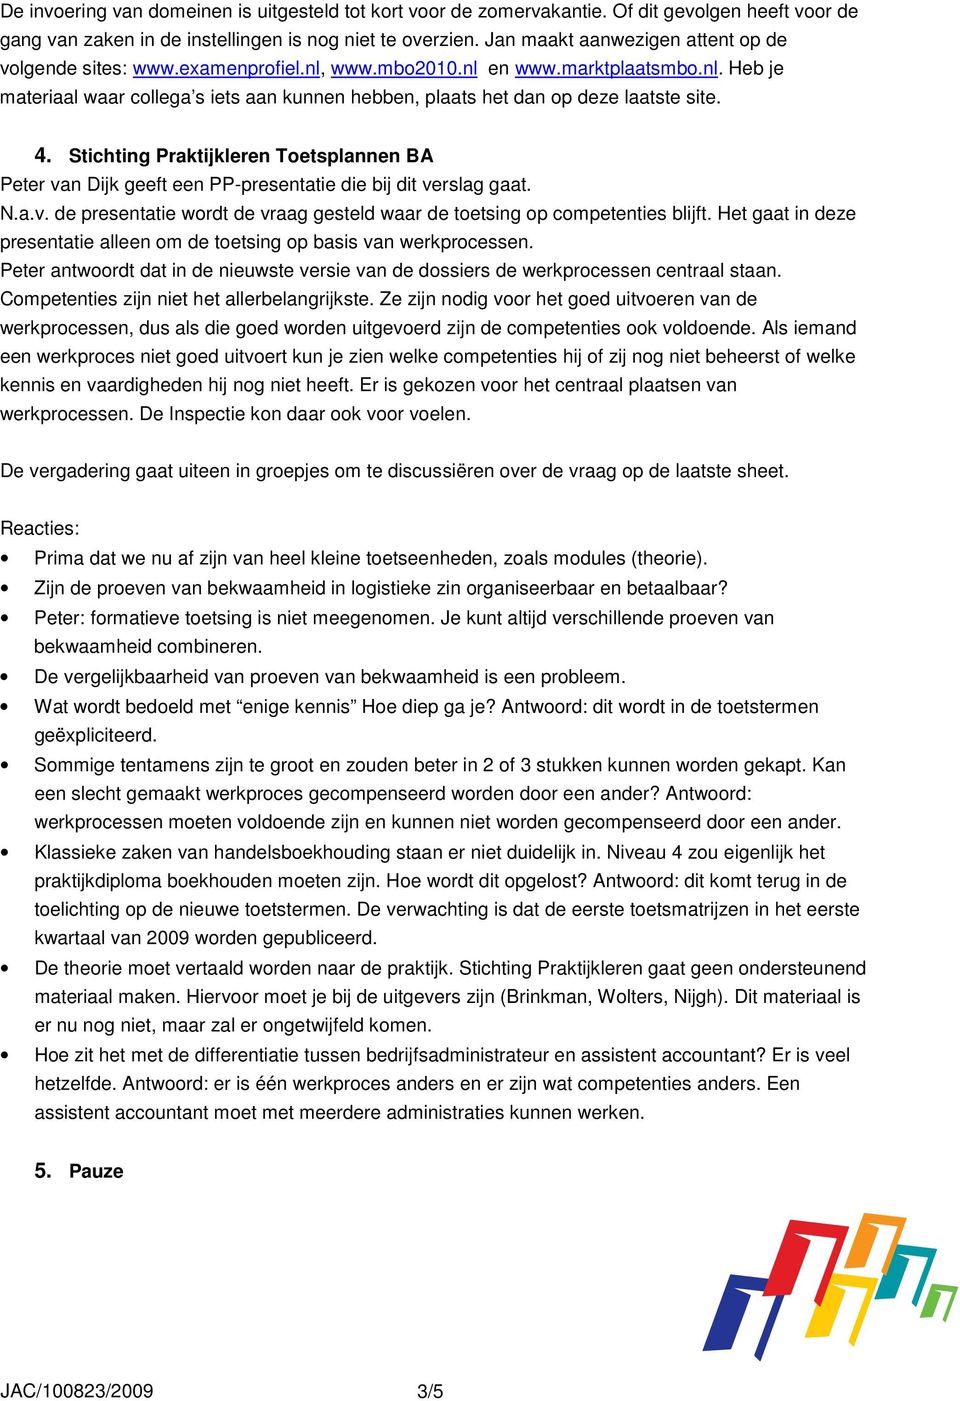 4. Stichting Praktijkleren Toetsplannen BA Peter van Dijk geeft een PP-presentatie die bij dit verslag gaat. N.a.v. de presentatie wordt de vraag gesteld waar de toetsing op competenties blijft.